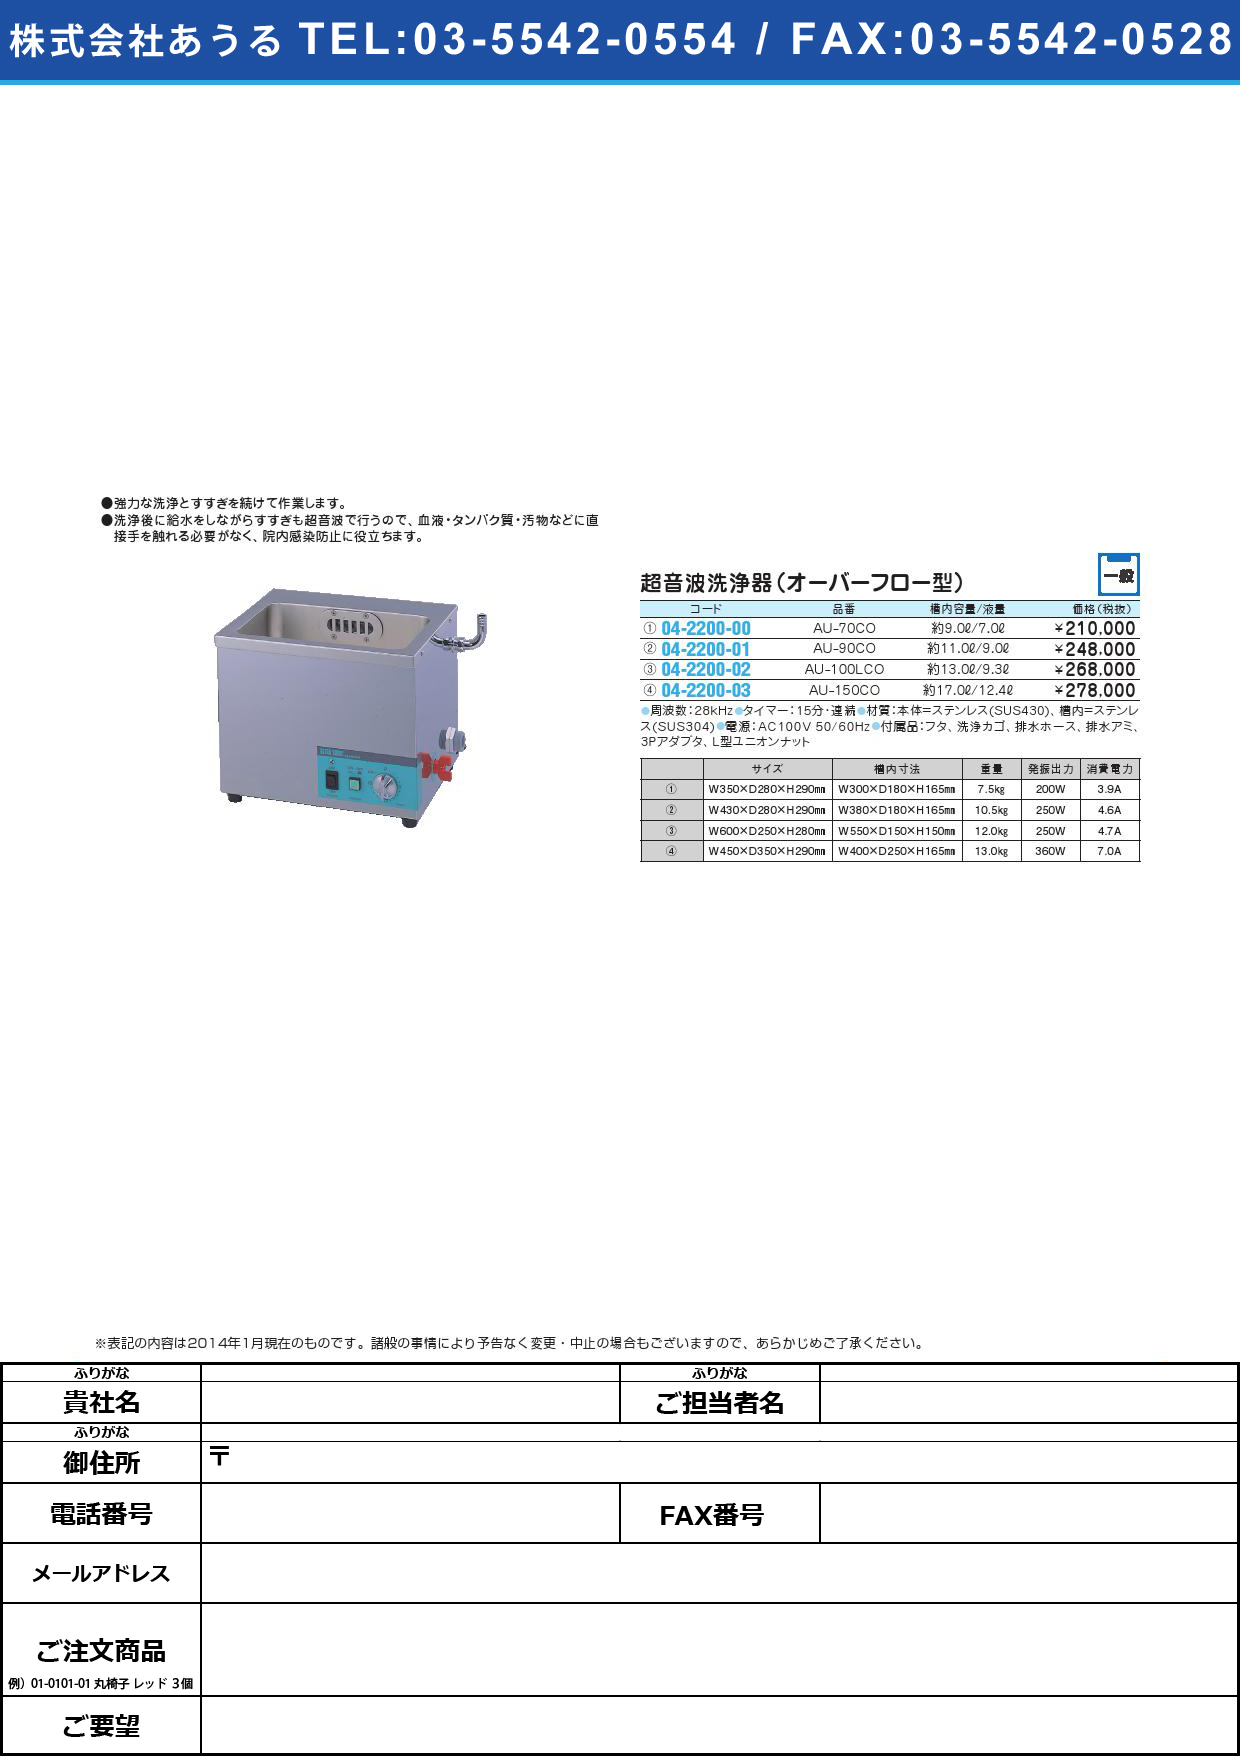 (04-2200-03)超音波洗浄器（オーバーフロー型） ﾁｮｳｵﾝﾊﾟｾﾝｼﾞｮｳｷ(04-2200-03)AU-150CO【1台単位】【2014年カタログ商品】